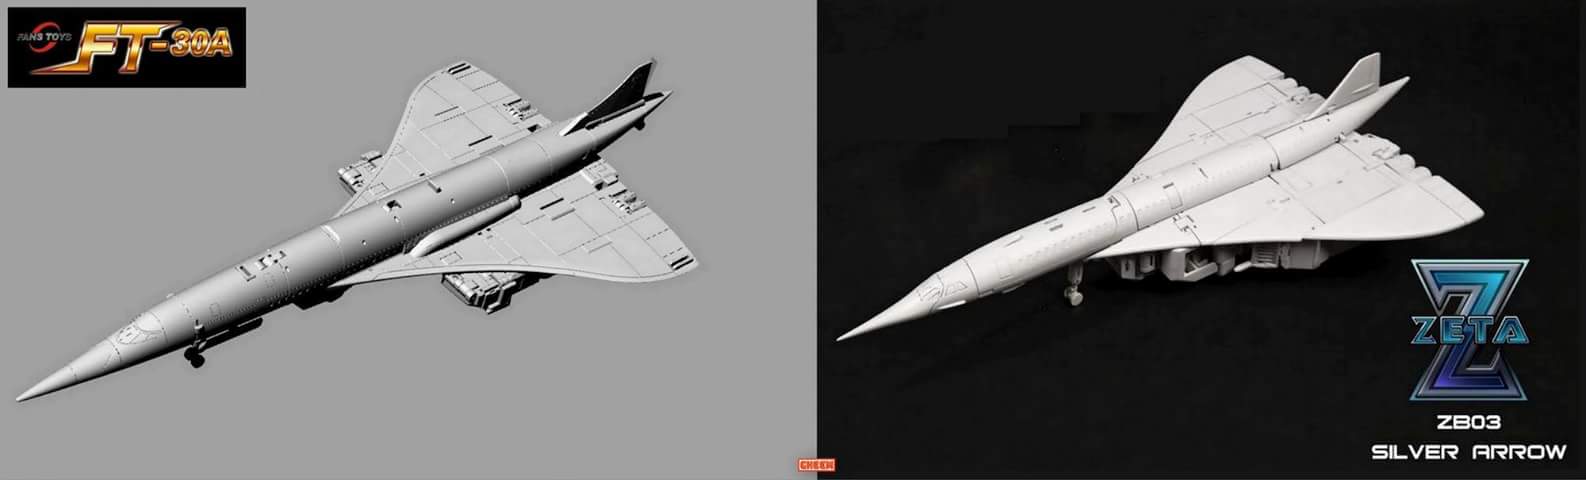 [Fanstoys] Produit Tiers - FT-30 Ethereaon (FT-30A à FT-30E) - aka Aérialbots/Aérobots forme Supérion H2jITYor_o